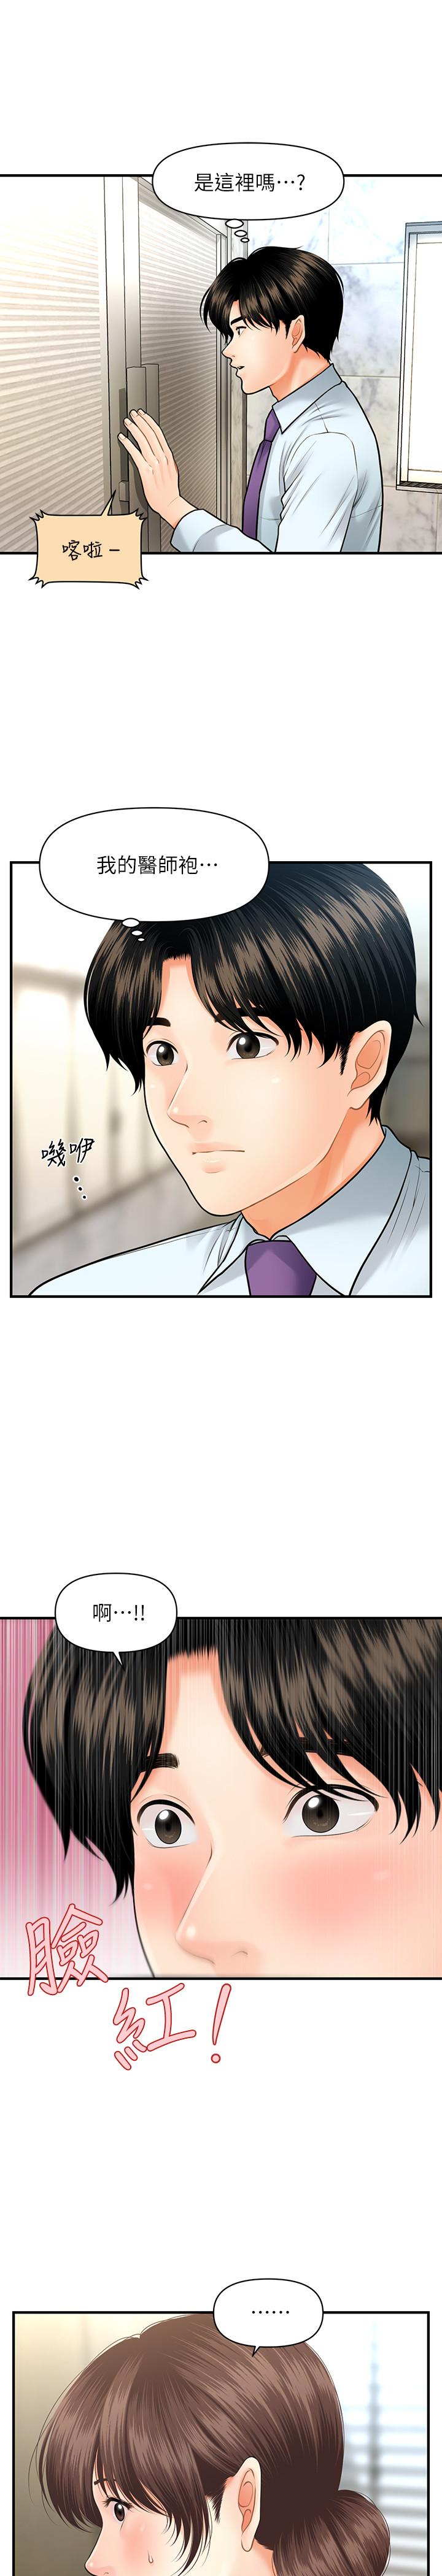 韩国污漫画 醫美奇雞 第12话-护理师诱人的翘臀 31